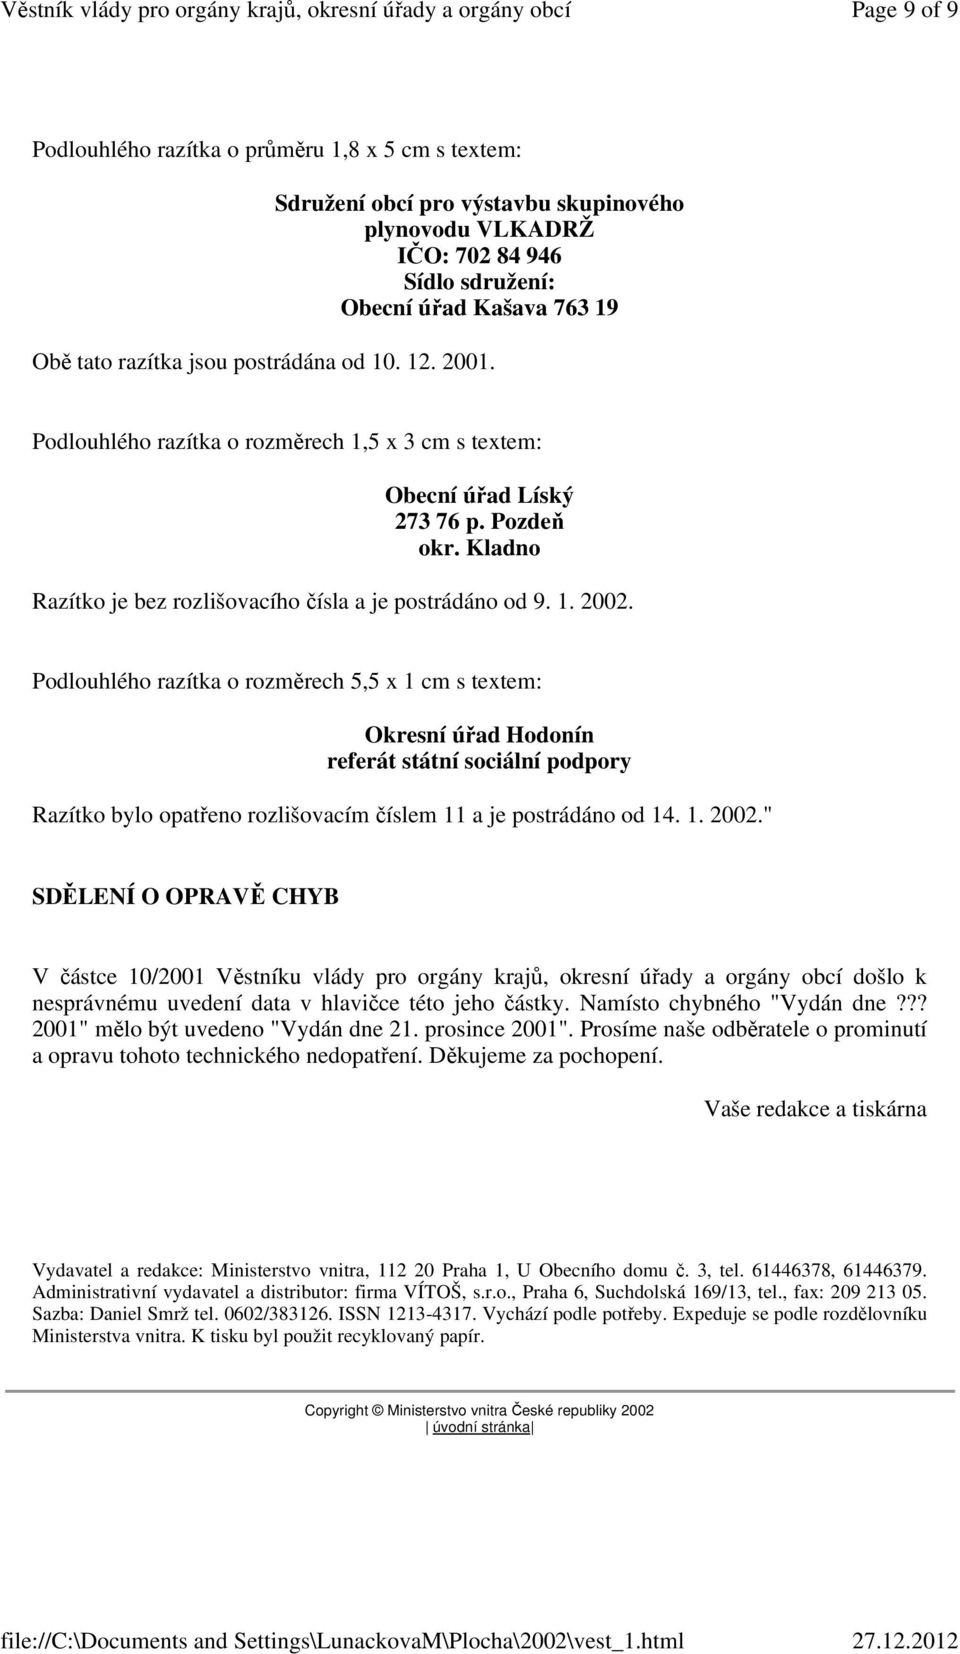 Podlouhlého razítka o rozměrech 5,5 x 1 cm s textem: Okresní úřad Hodonín referát státní sociální podpory Razítko bylo opatřeno rozlišovacím číslem 11 a je postrádáno od 14. 1. 2002.